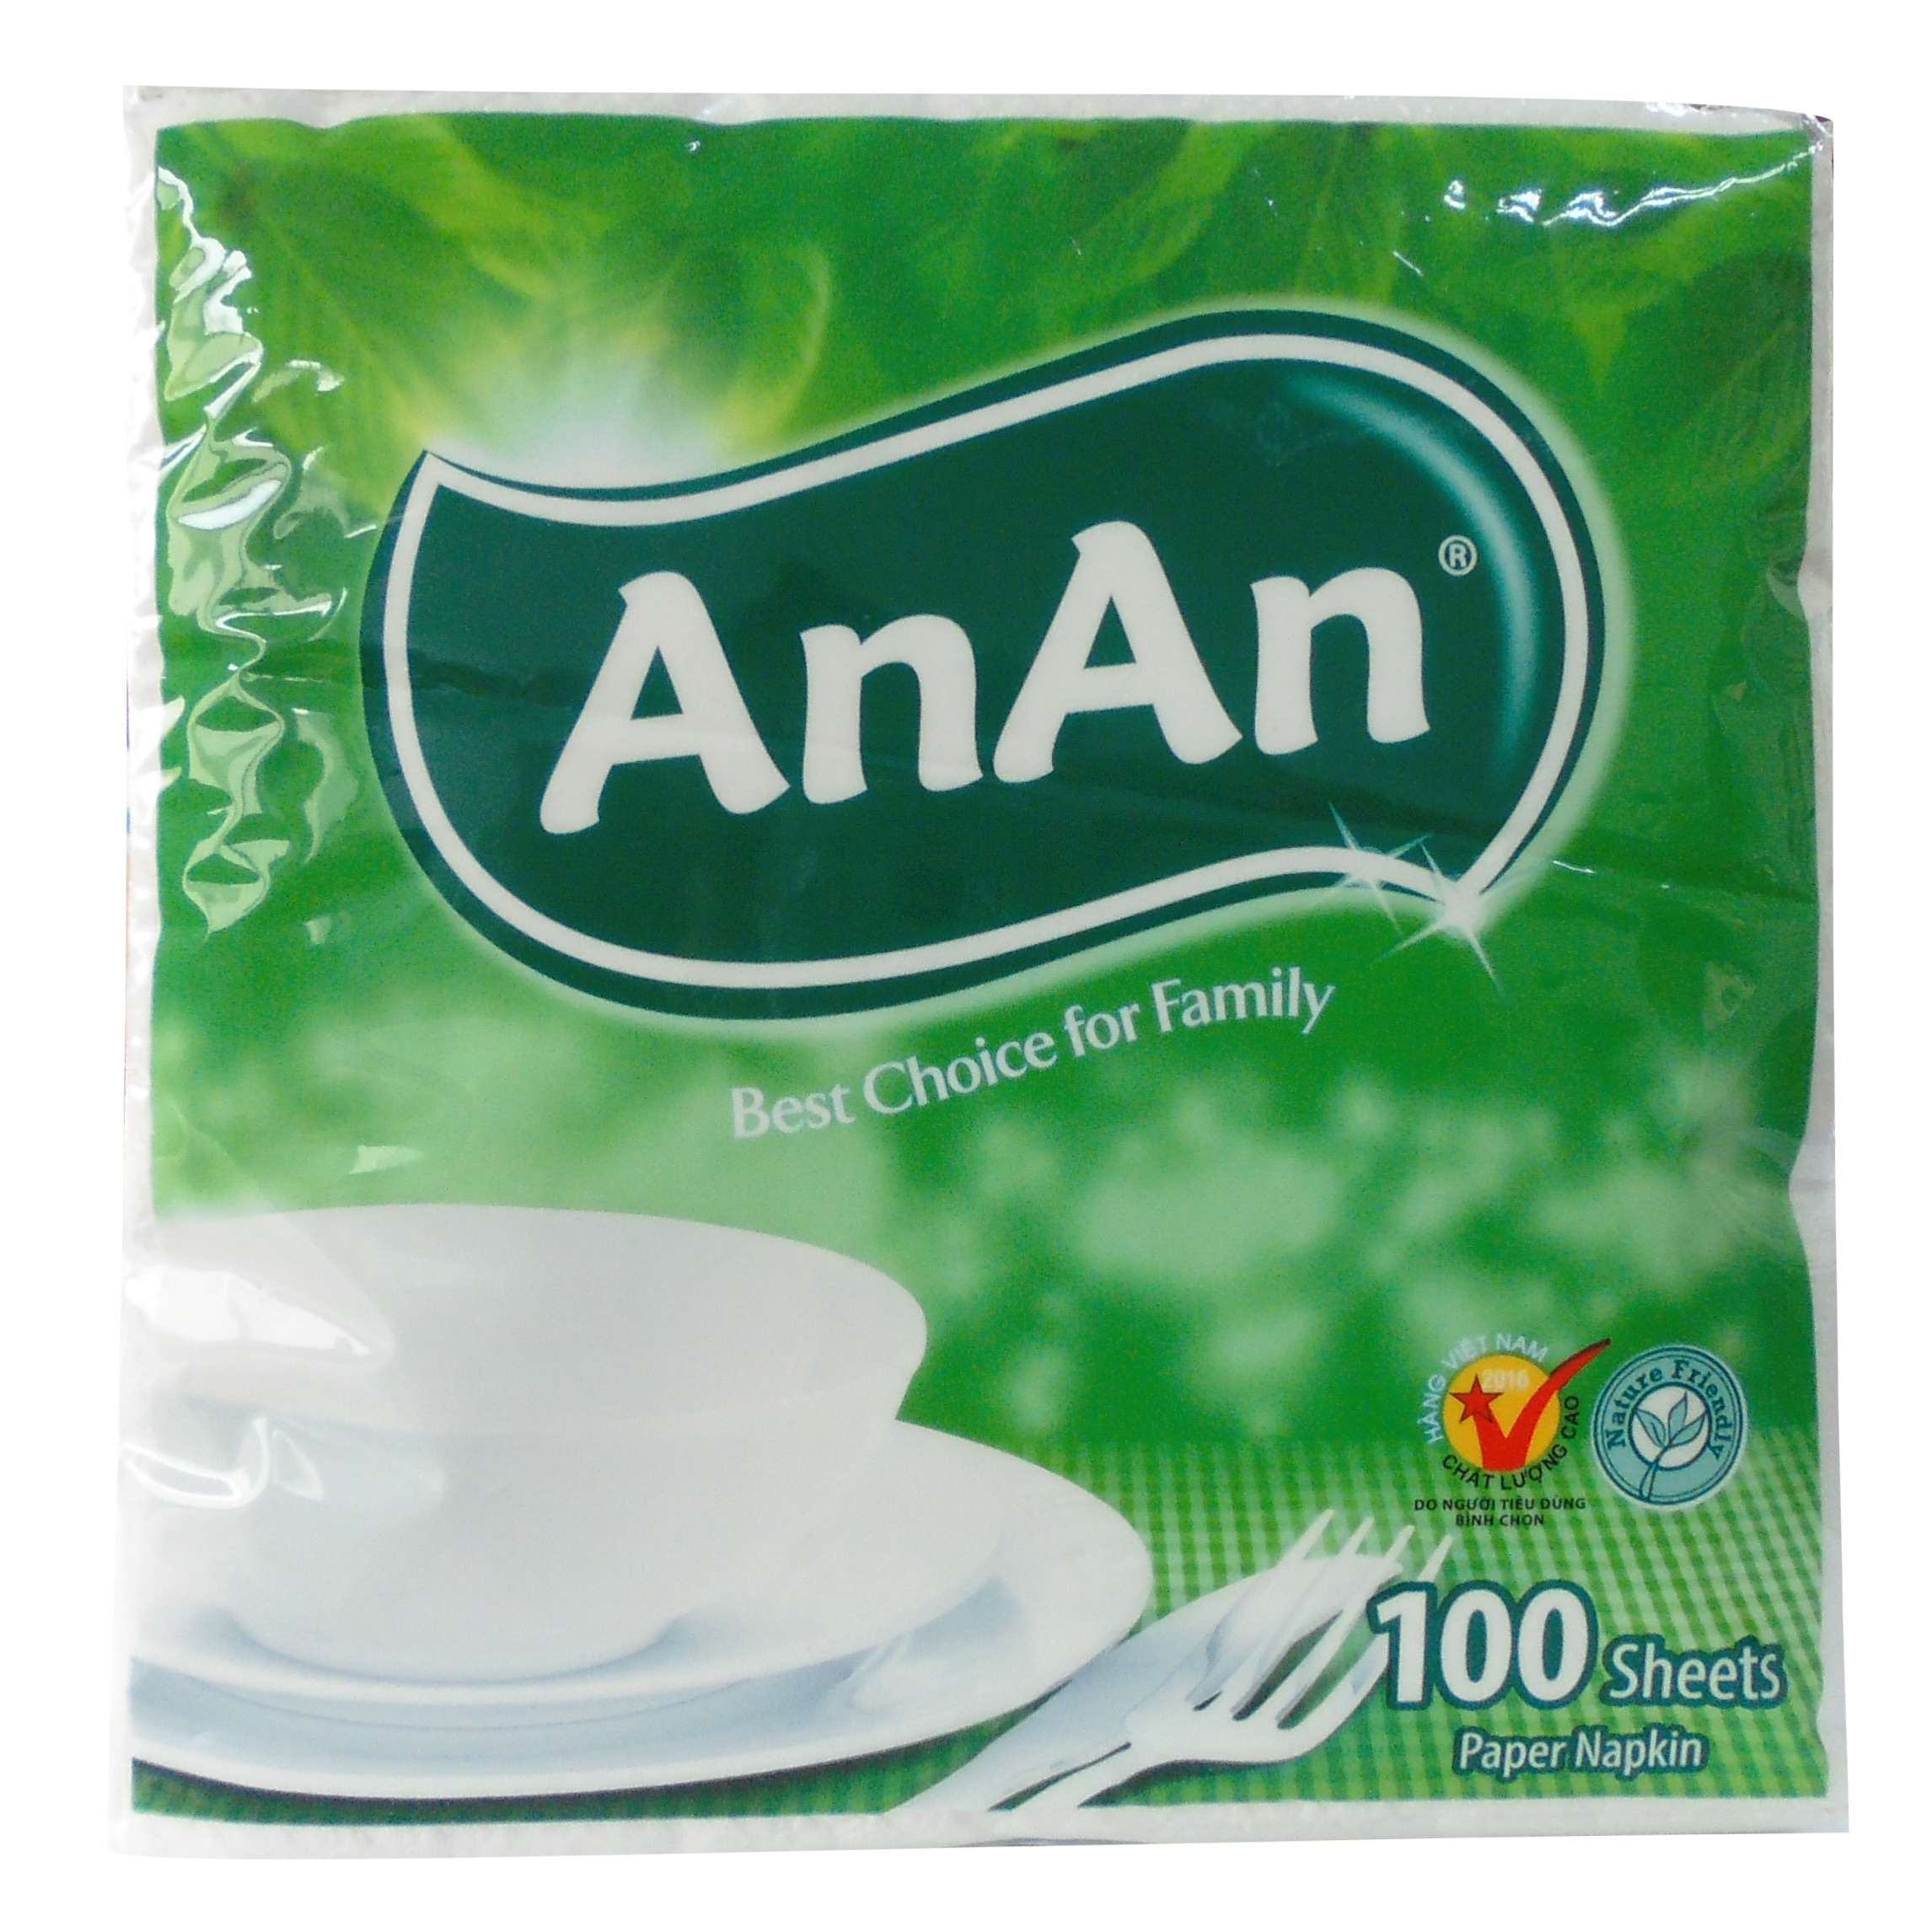 AnAn Pop-Up Napkin Tissue